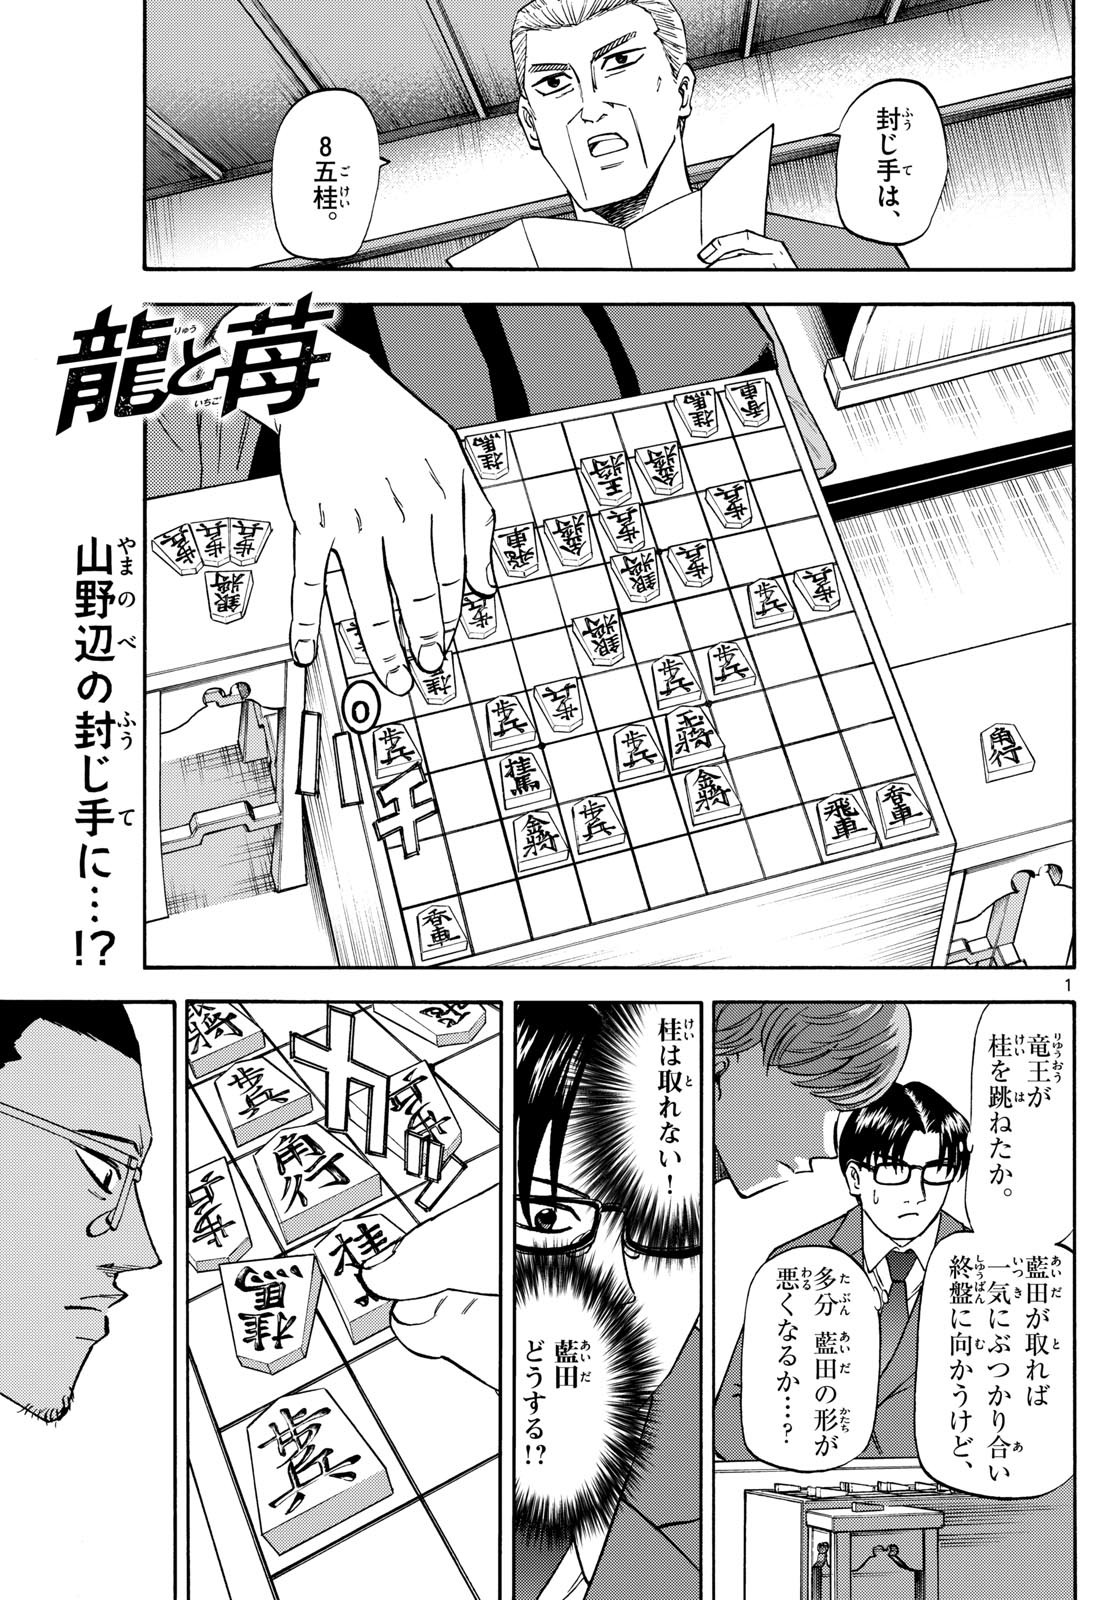 Ryu-to-Ichigo - Chapter 177 - Page 1